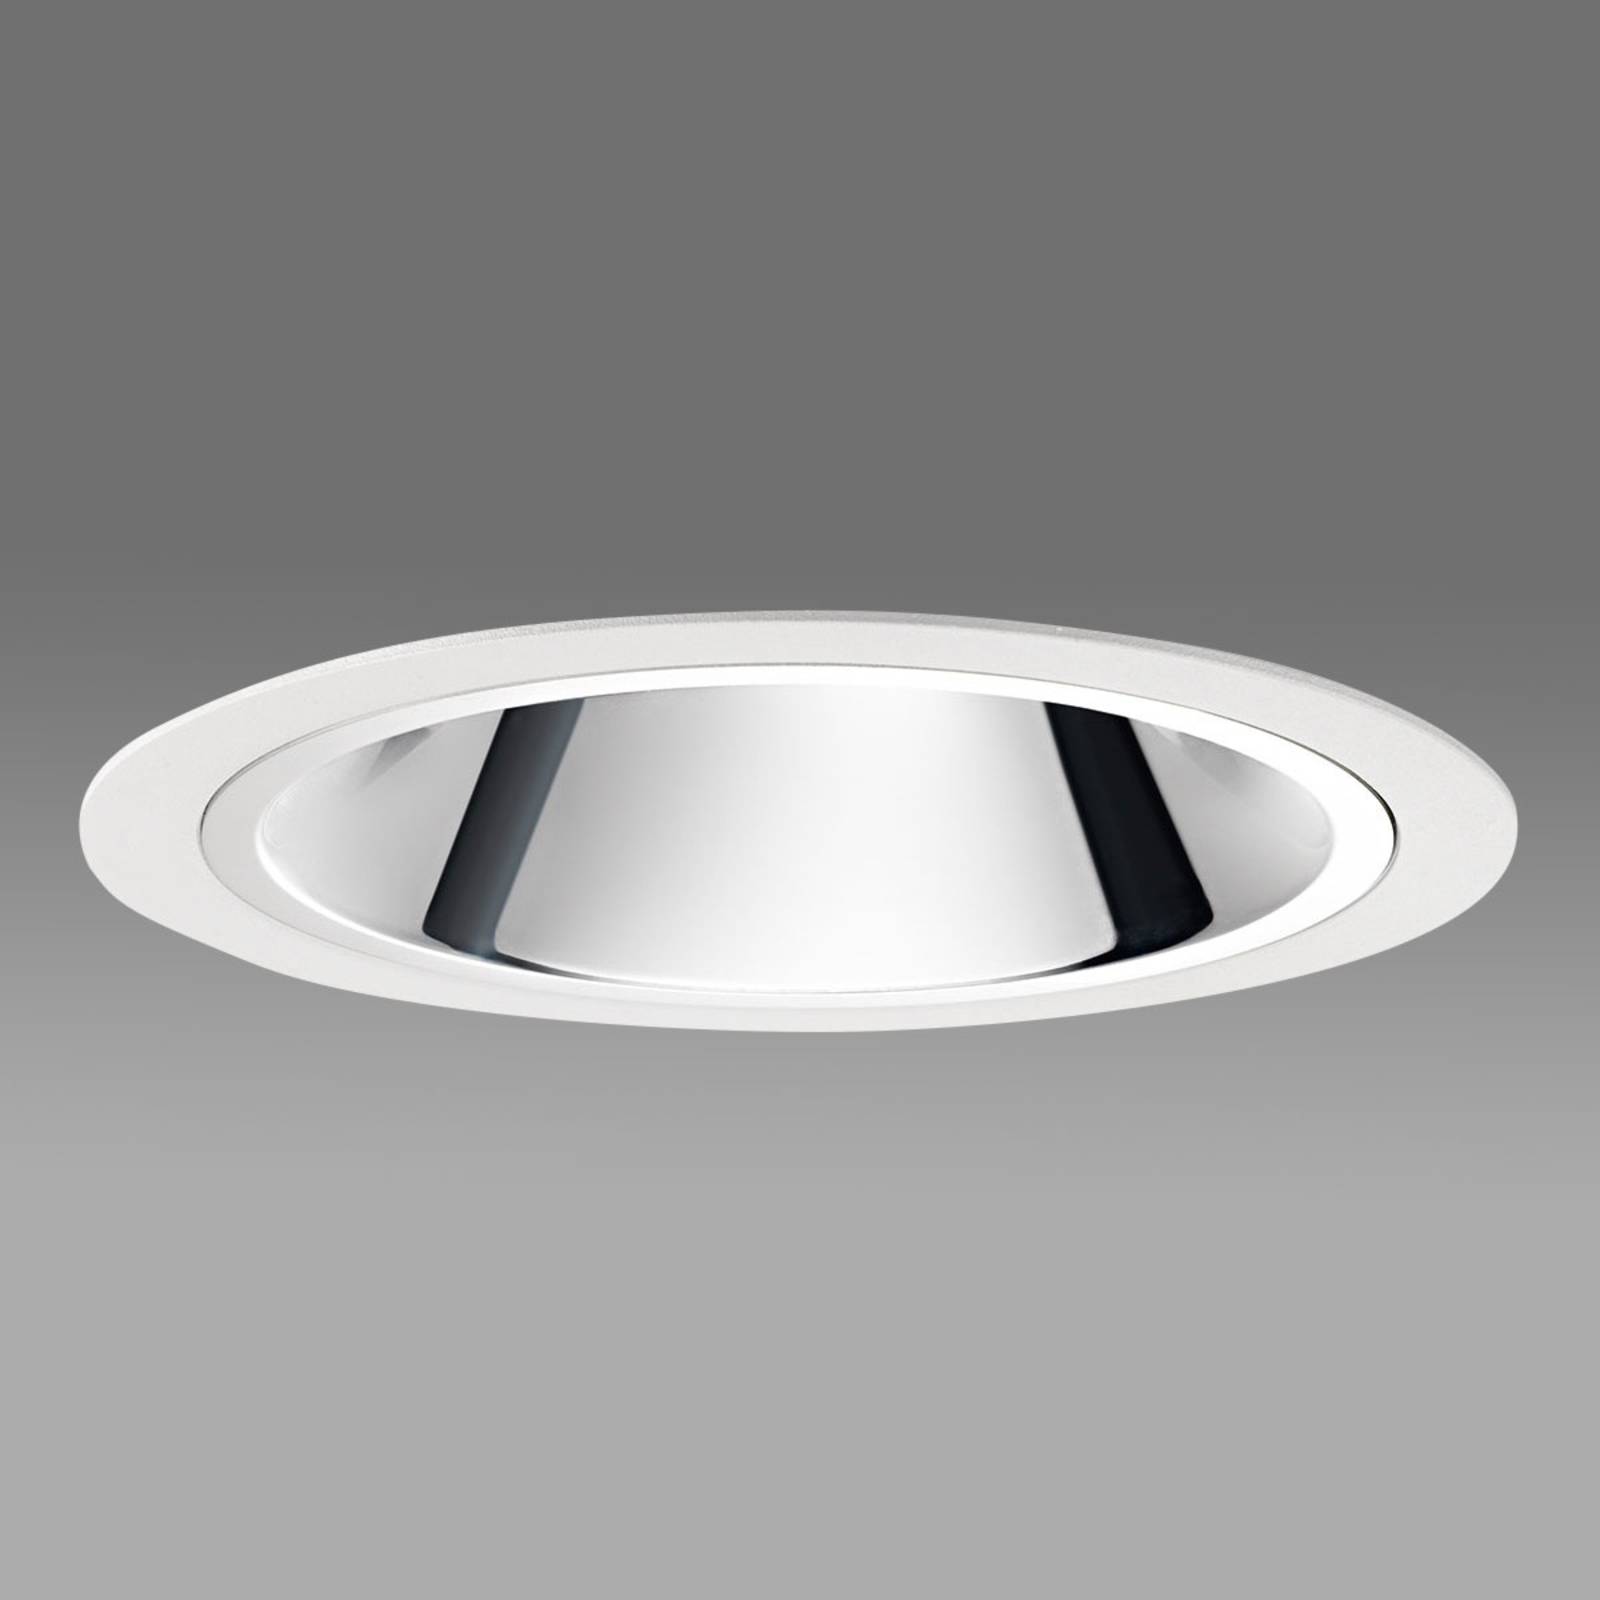 Egger Licht Centro XL - lampe encastrée LED efficace, blanche